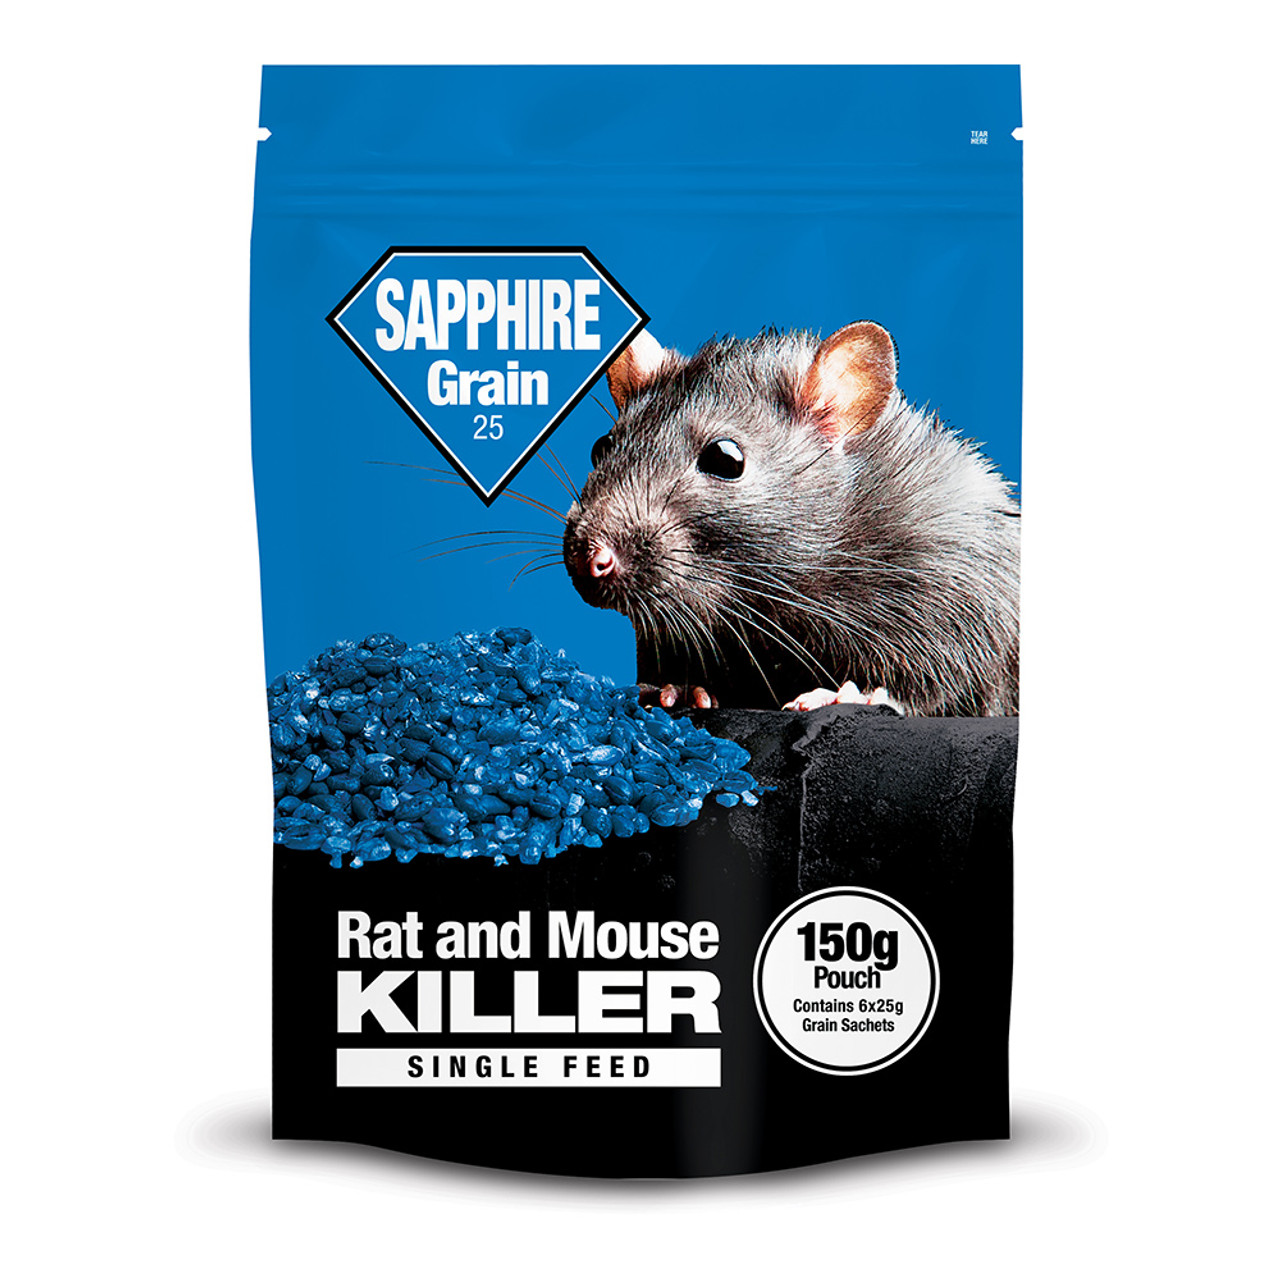 Fluoride in Rat Poison